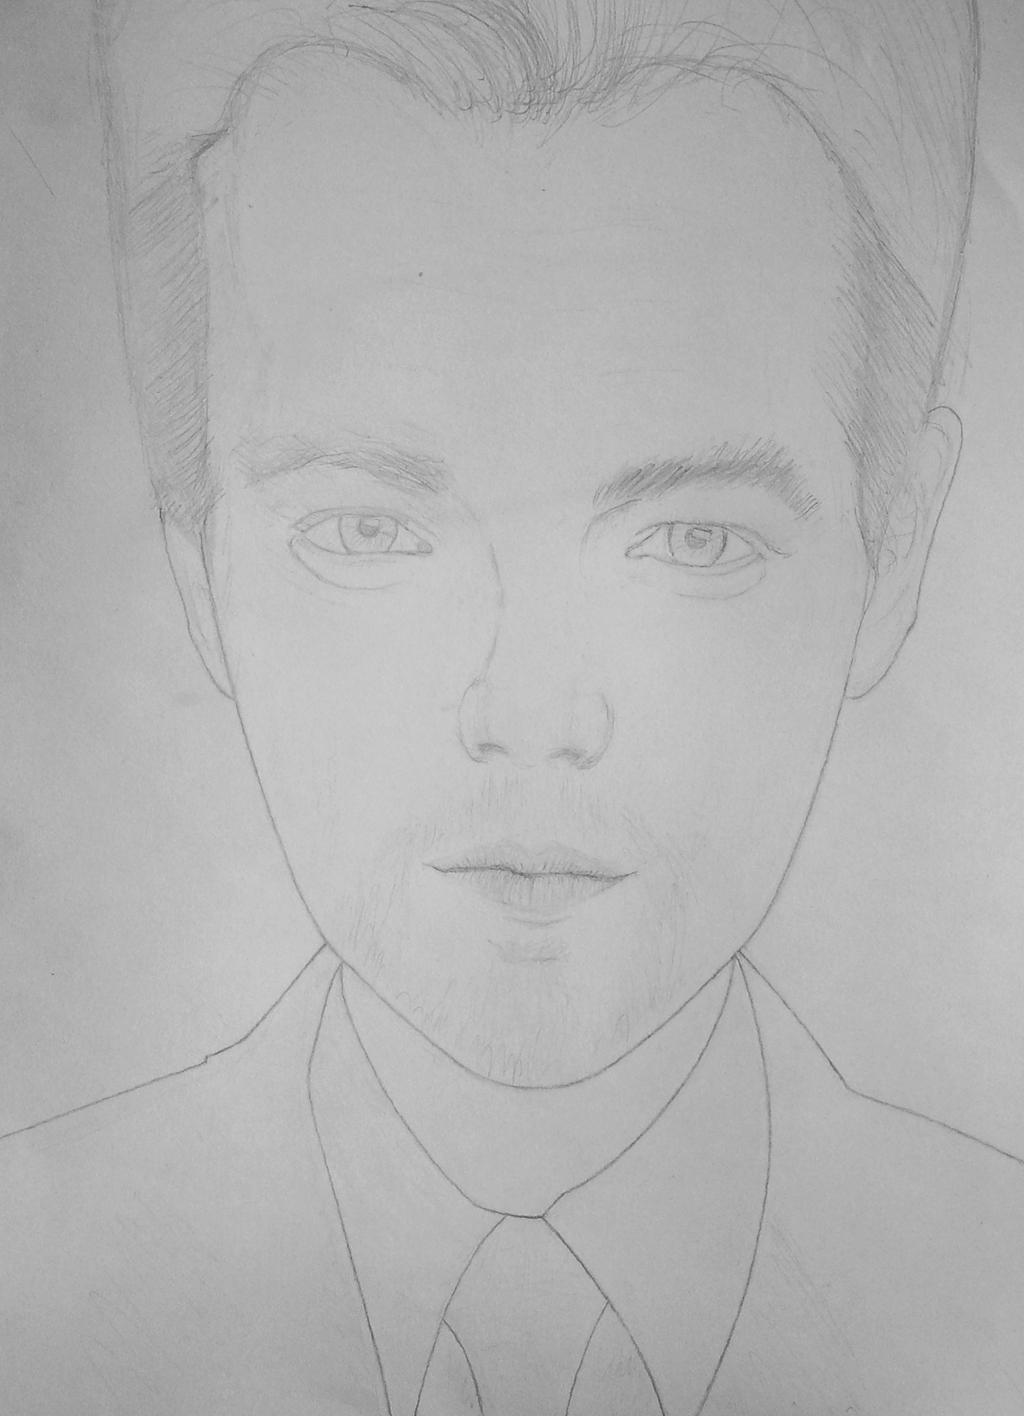 Leonardo DiCaprio - just a doodle until now